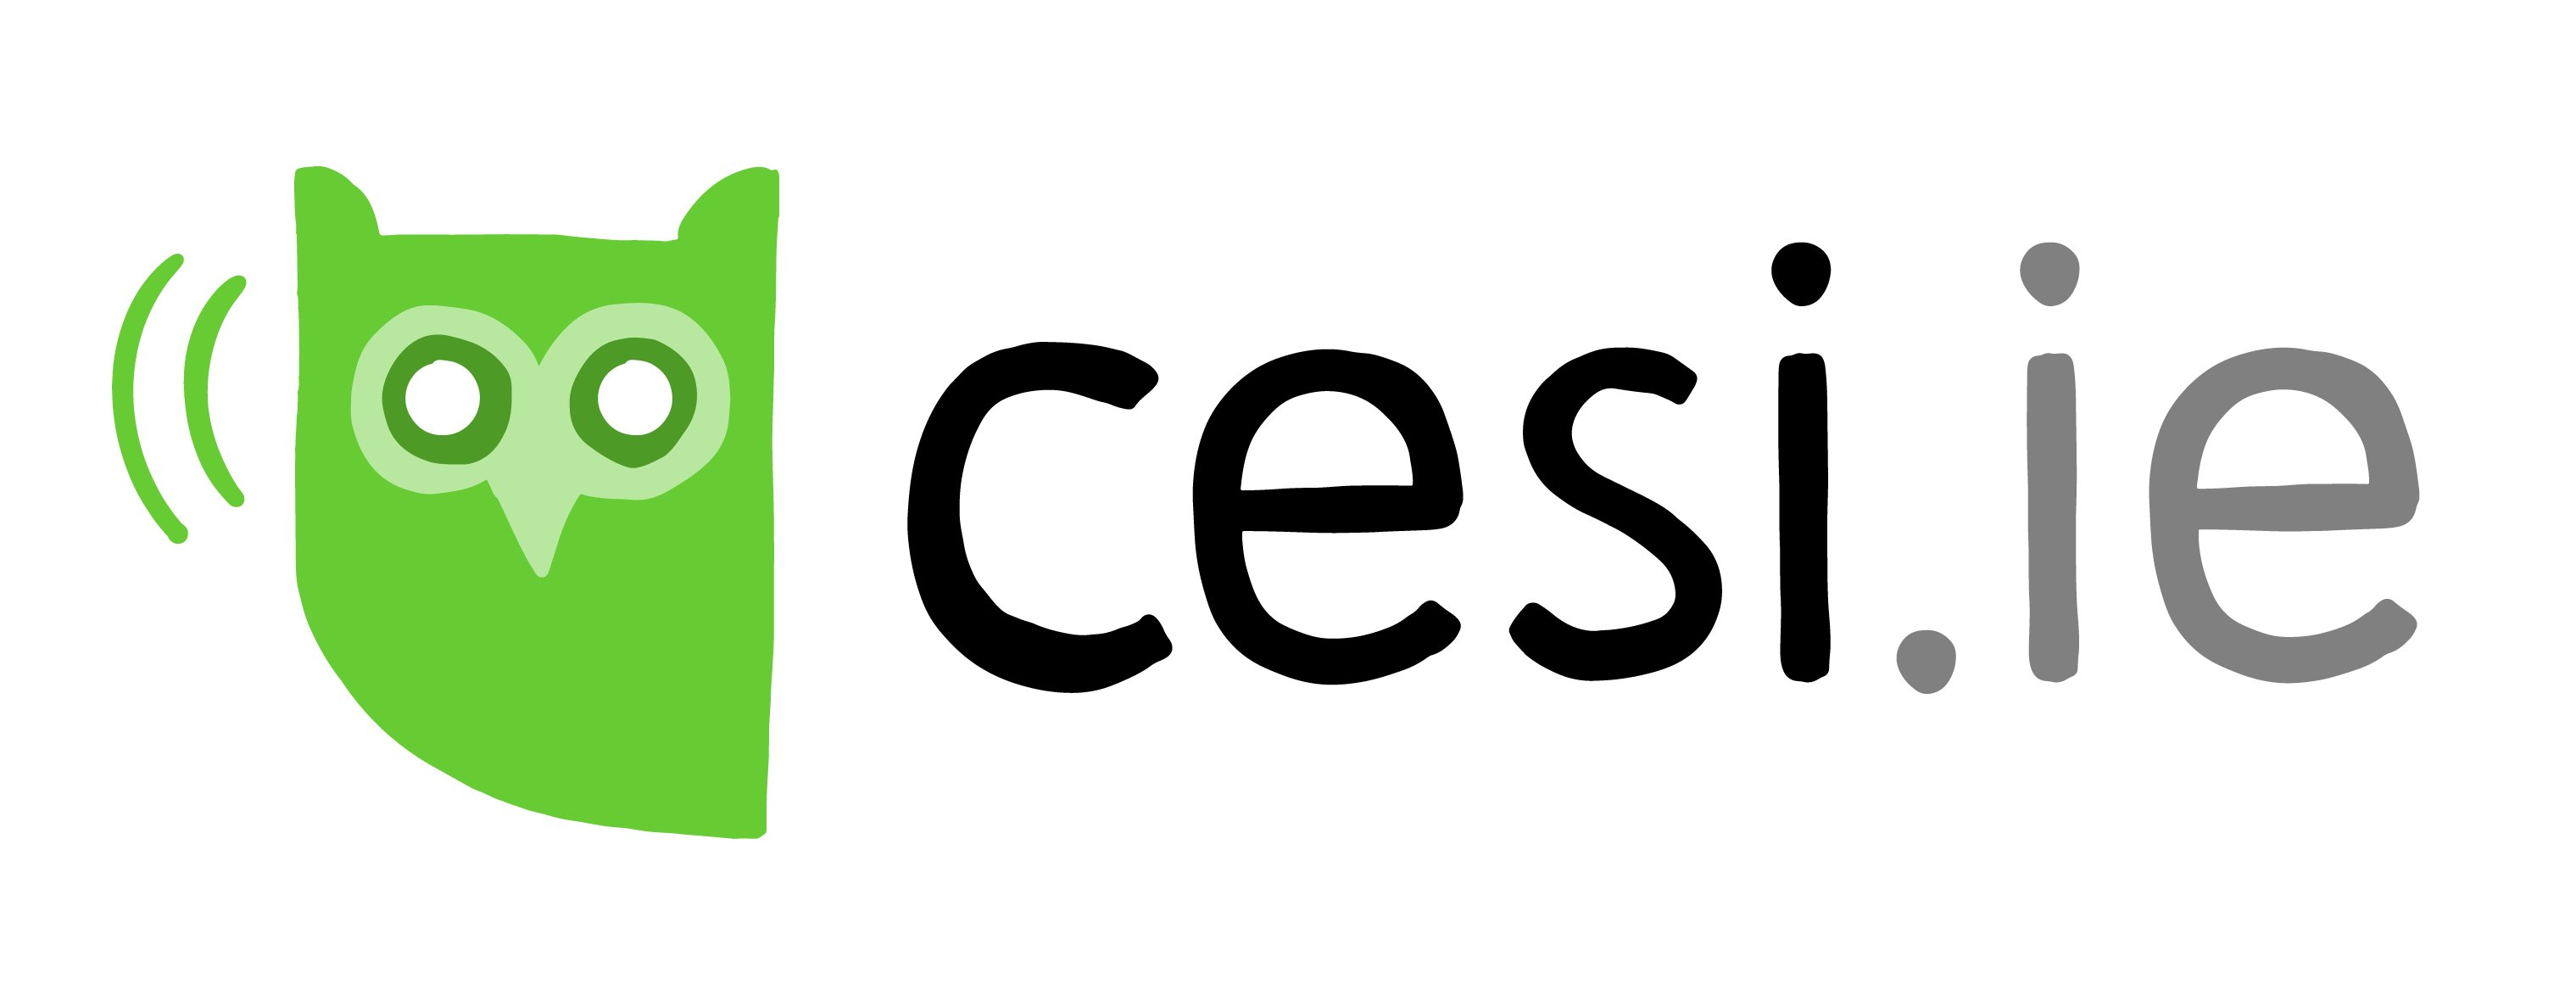 CESI - merch logo